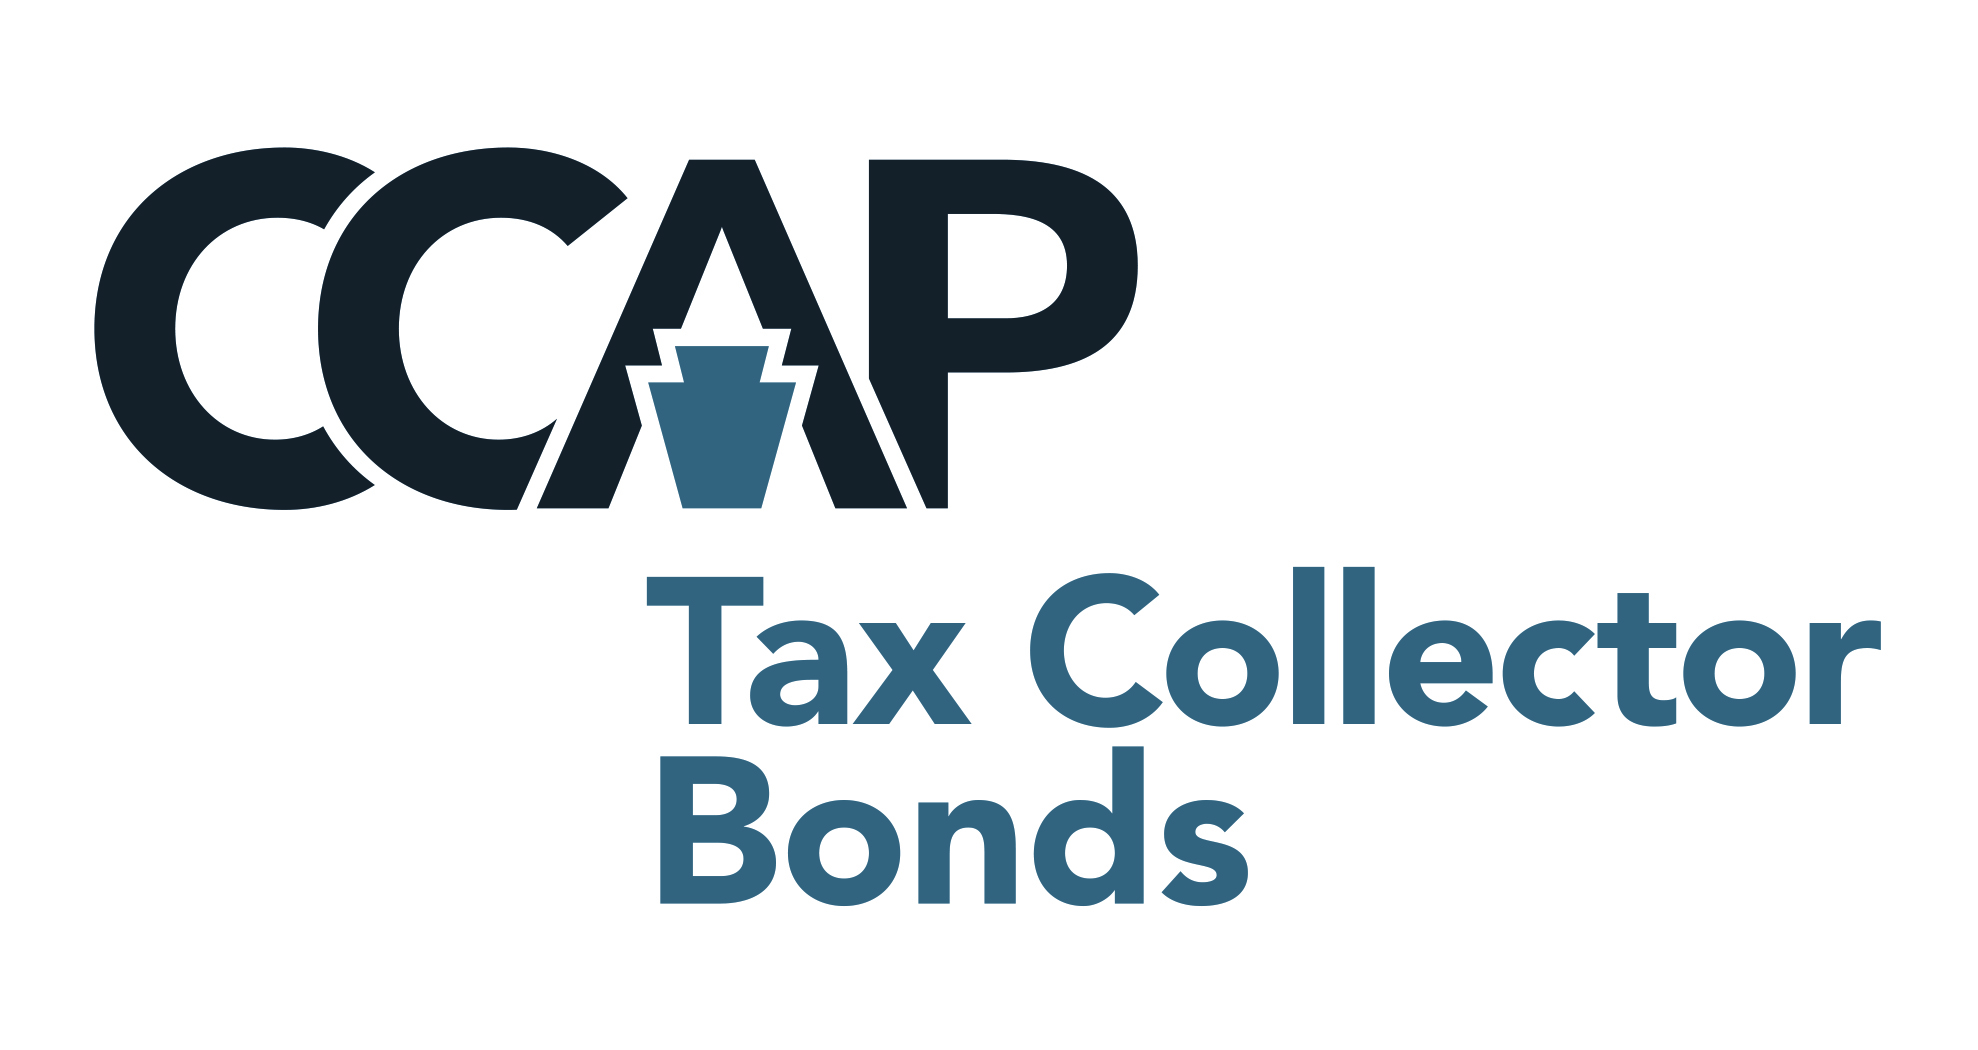 CCAP Tax Collector Bonds logo